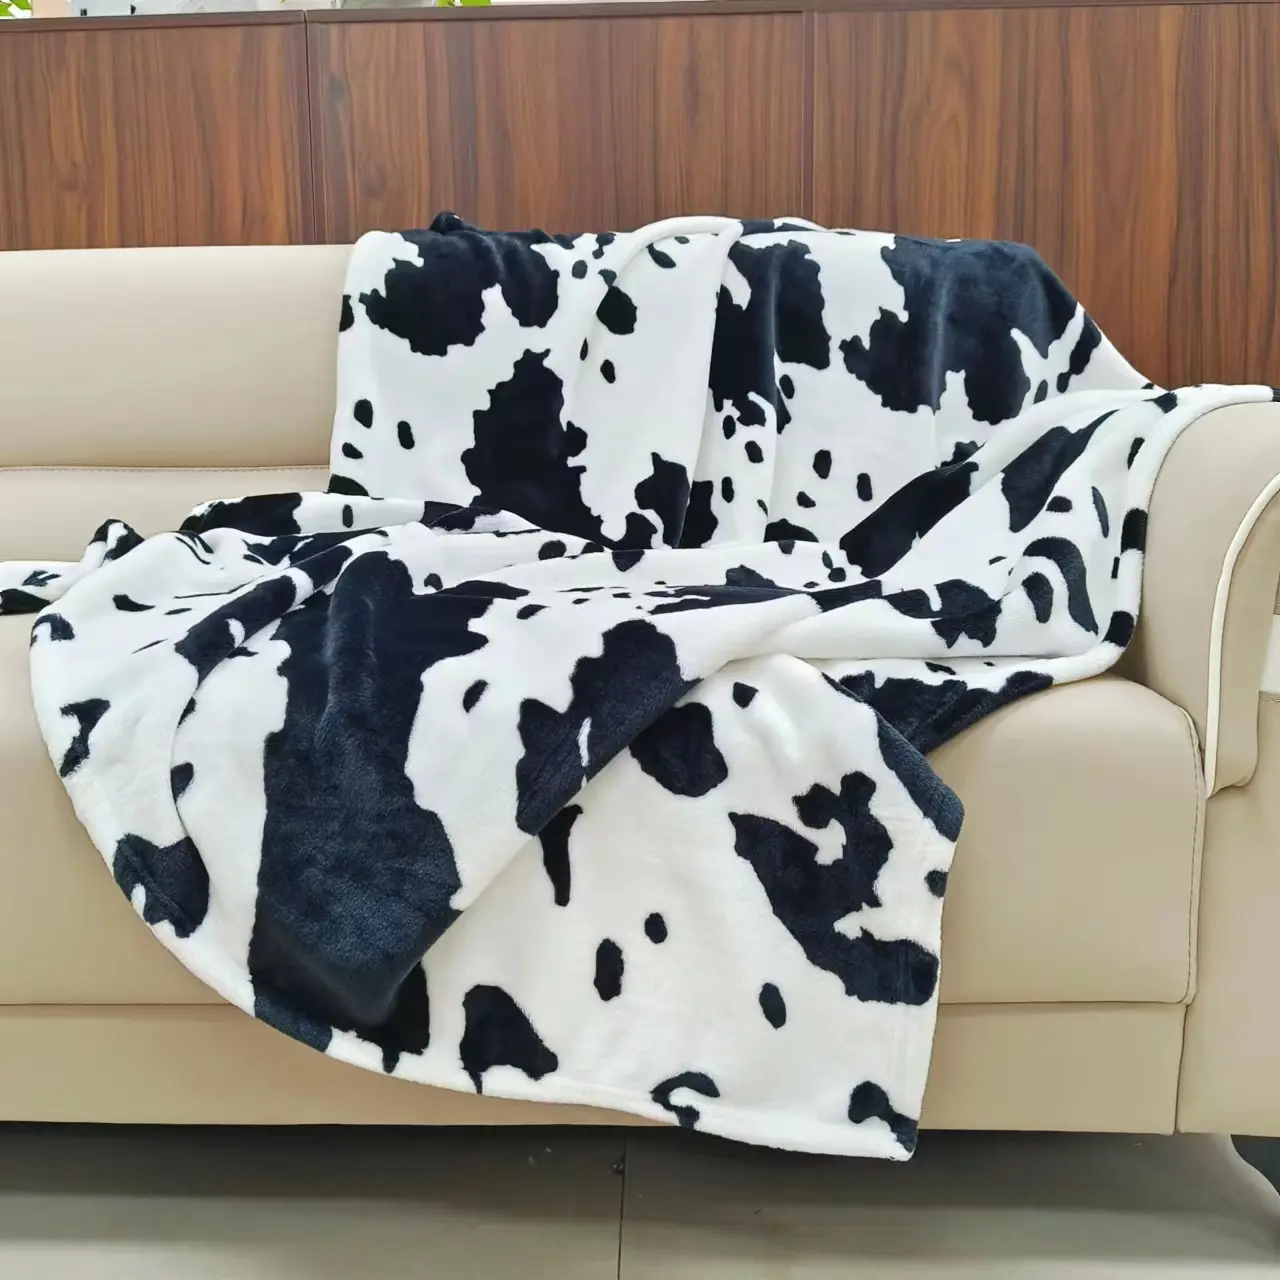 New blanket double-sided plush thickened small blanket children cover milk color sofa warm velvet blanket